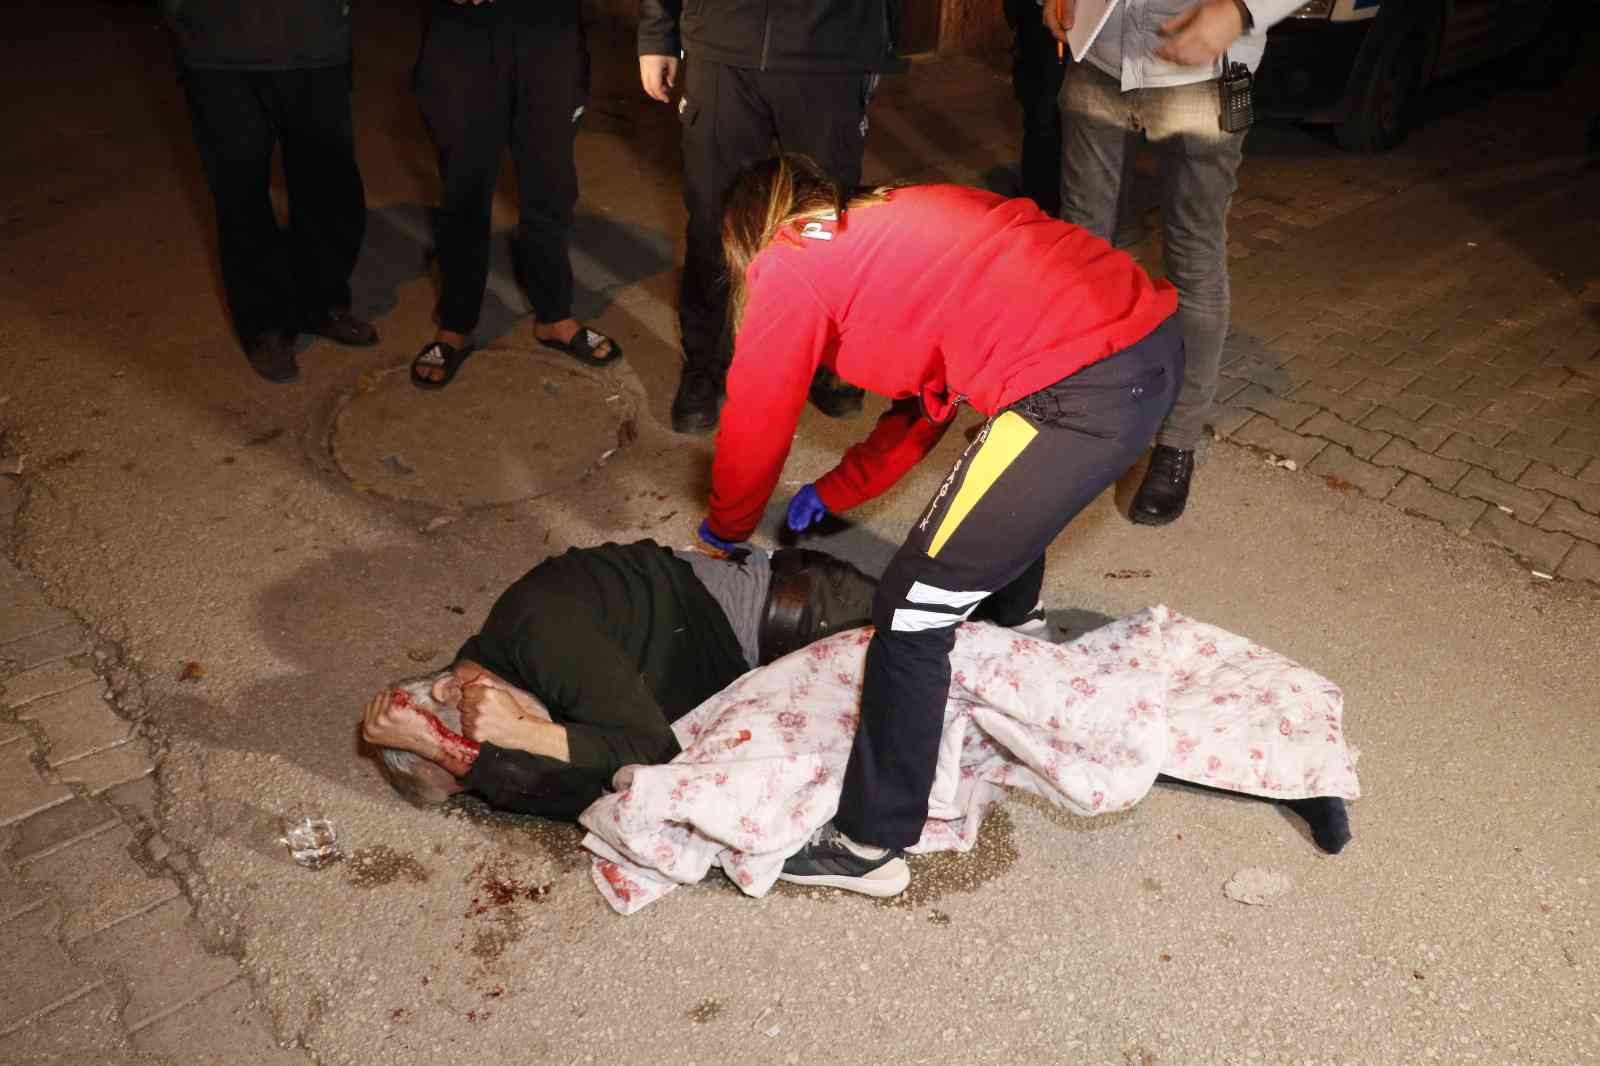 6 yerinden bıçaklanan kişi ağır yaralandı #adana